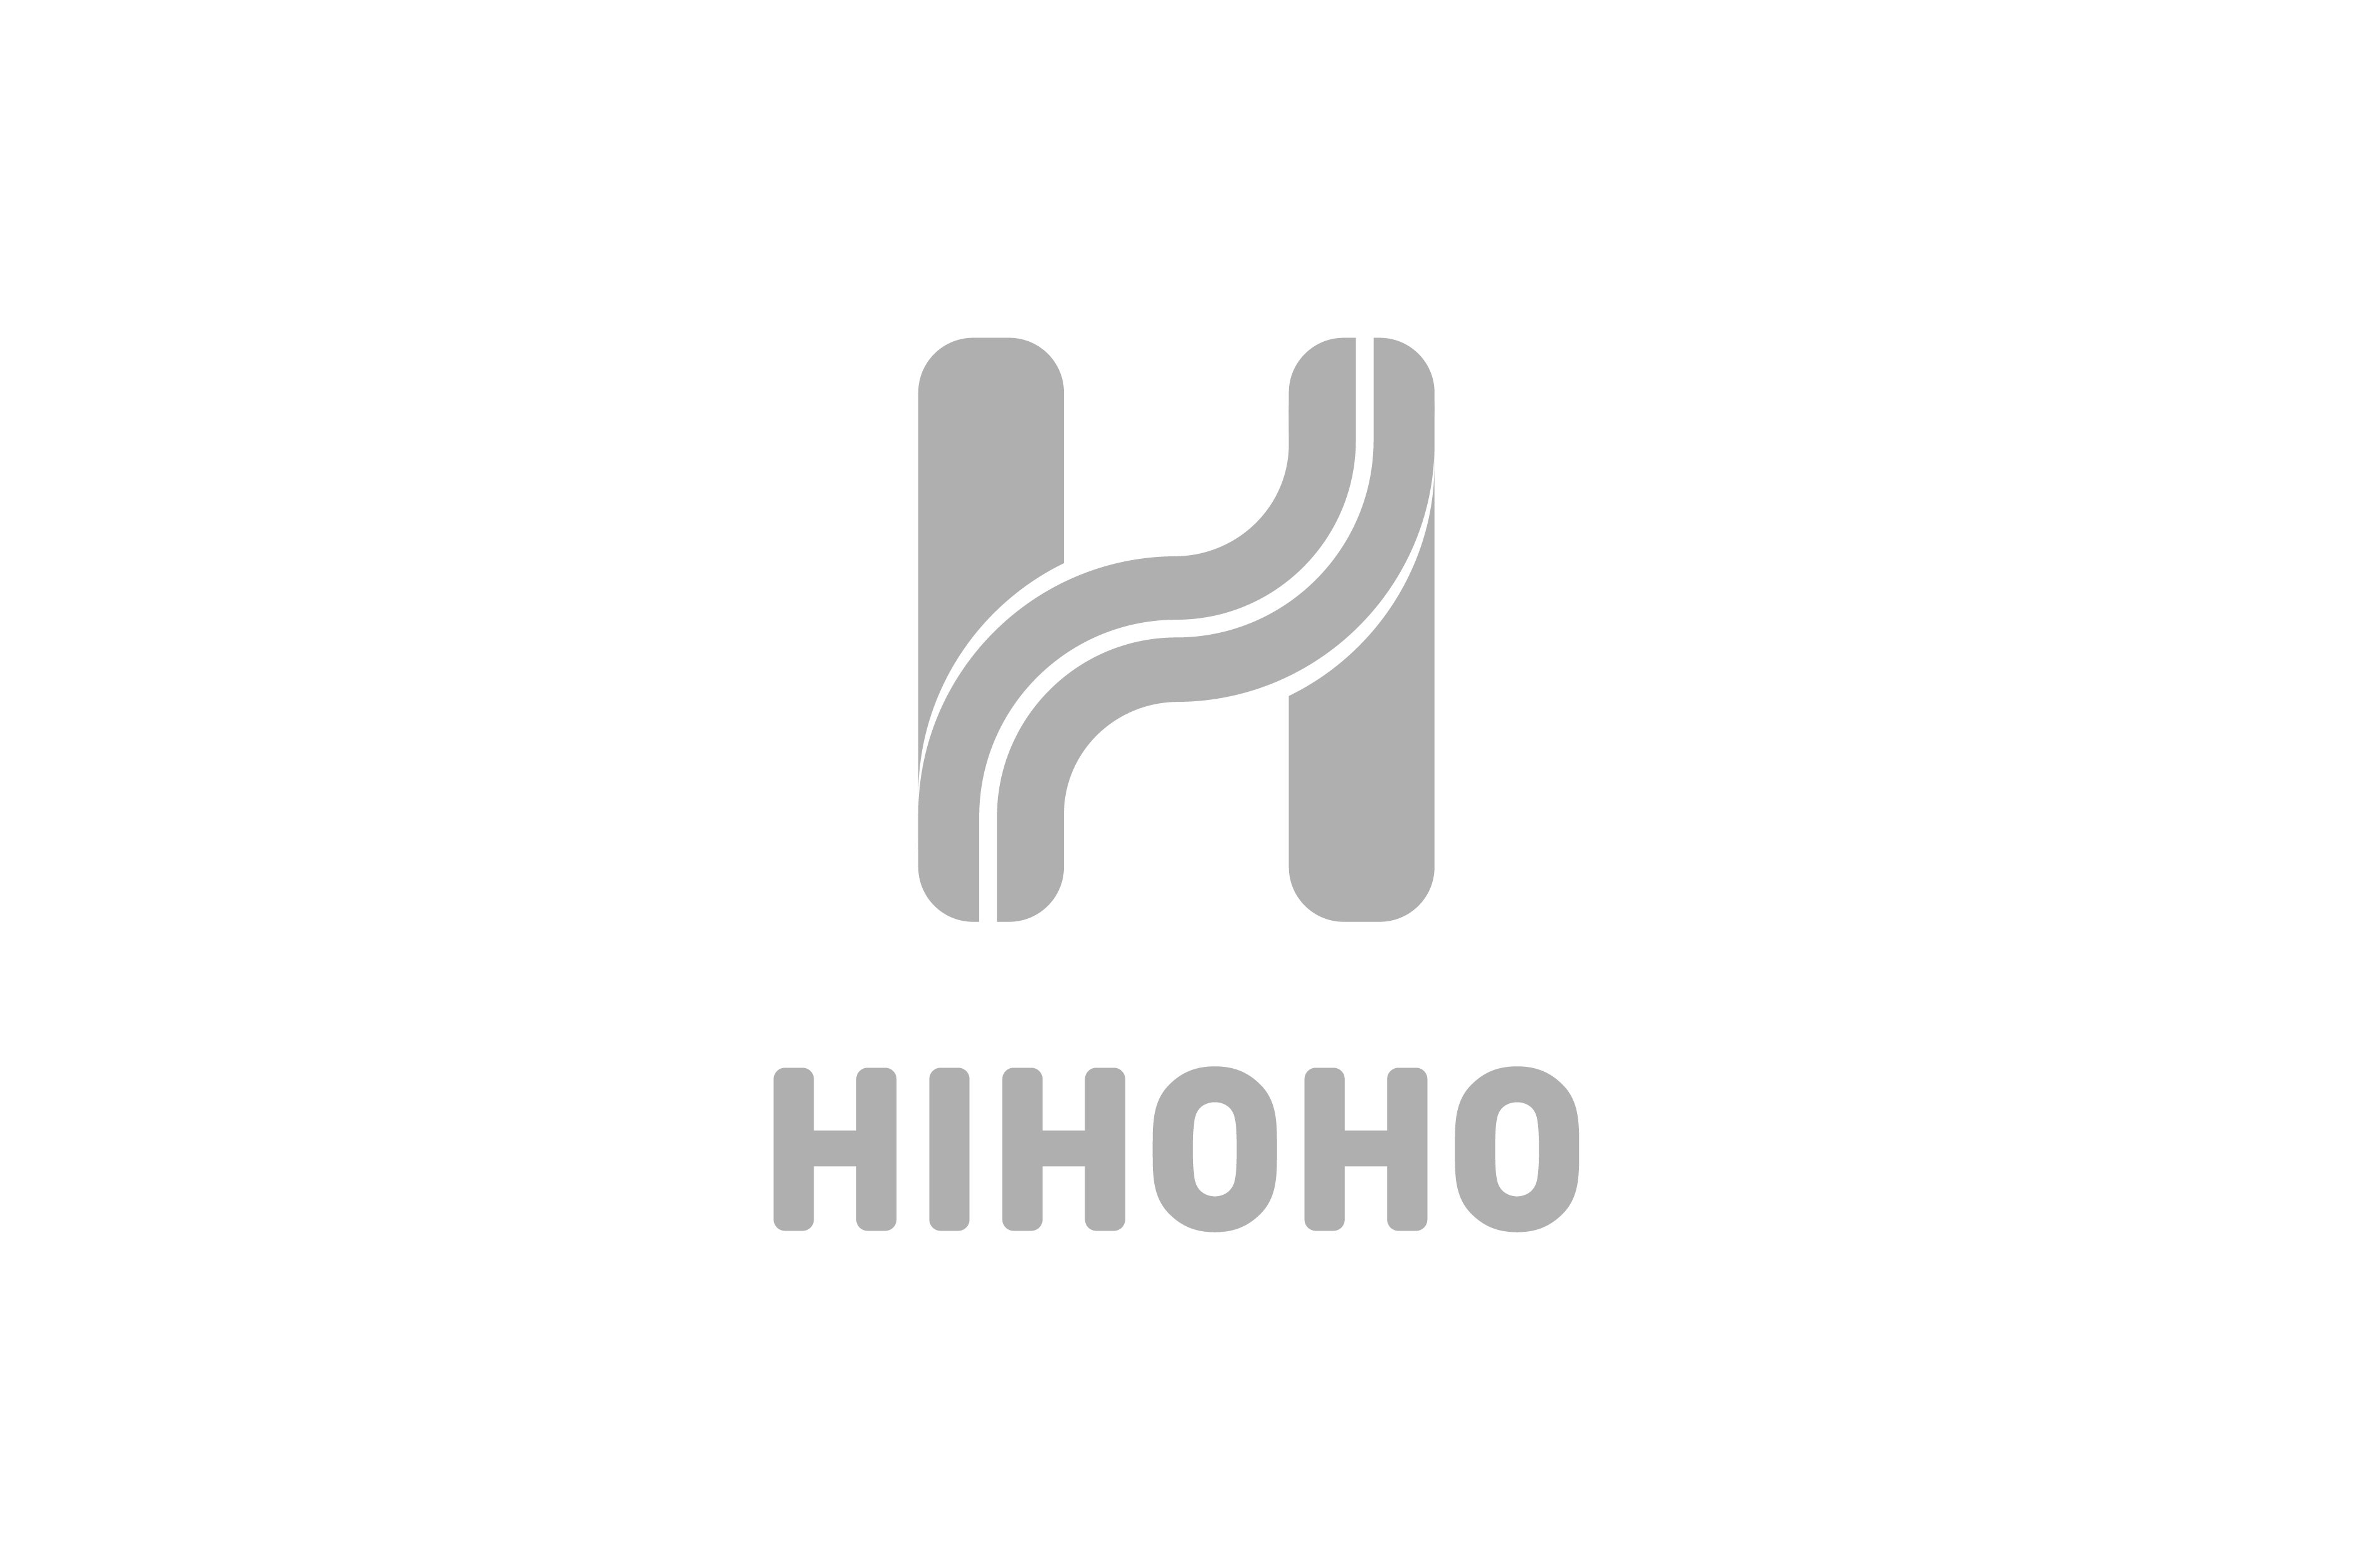  HIHOHO